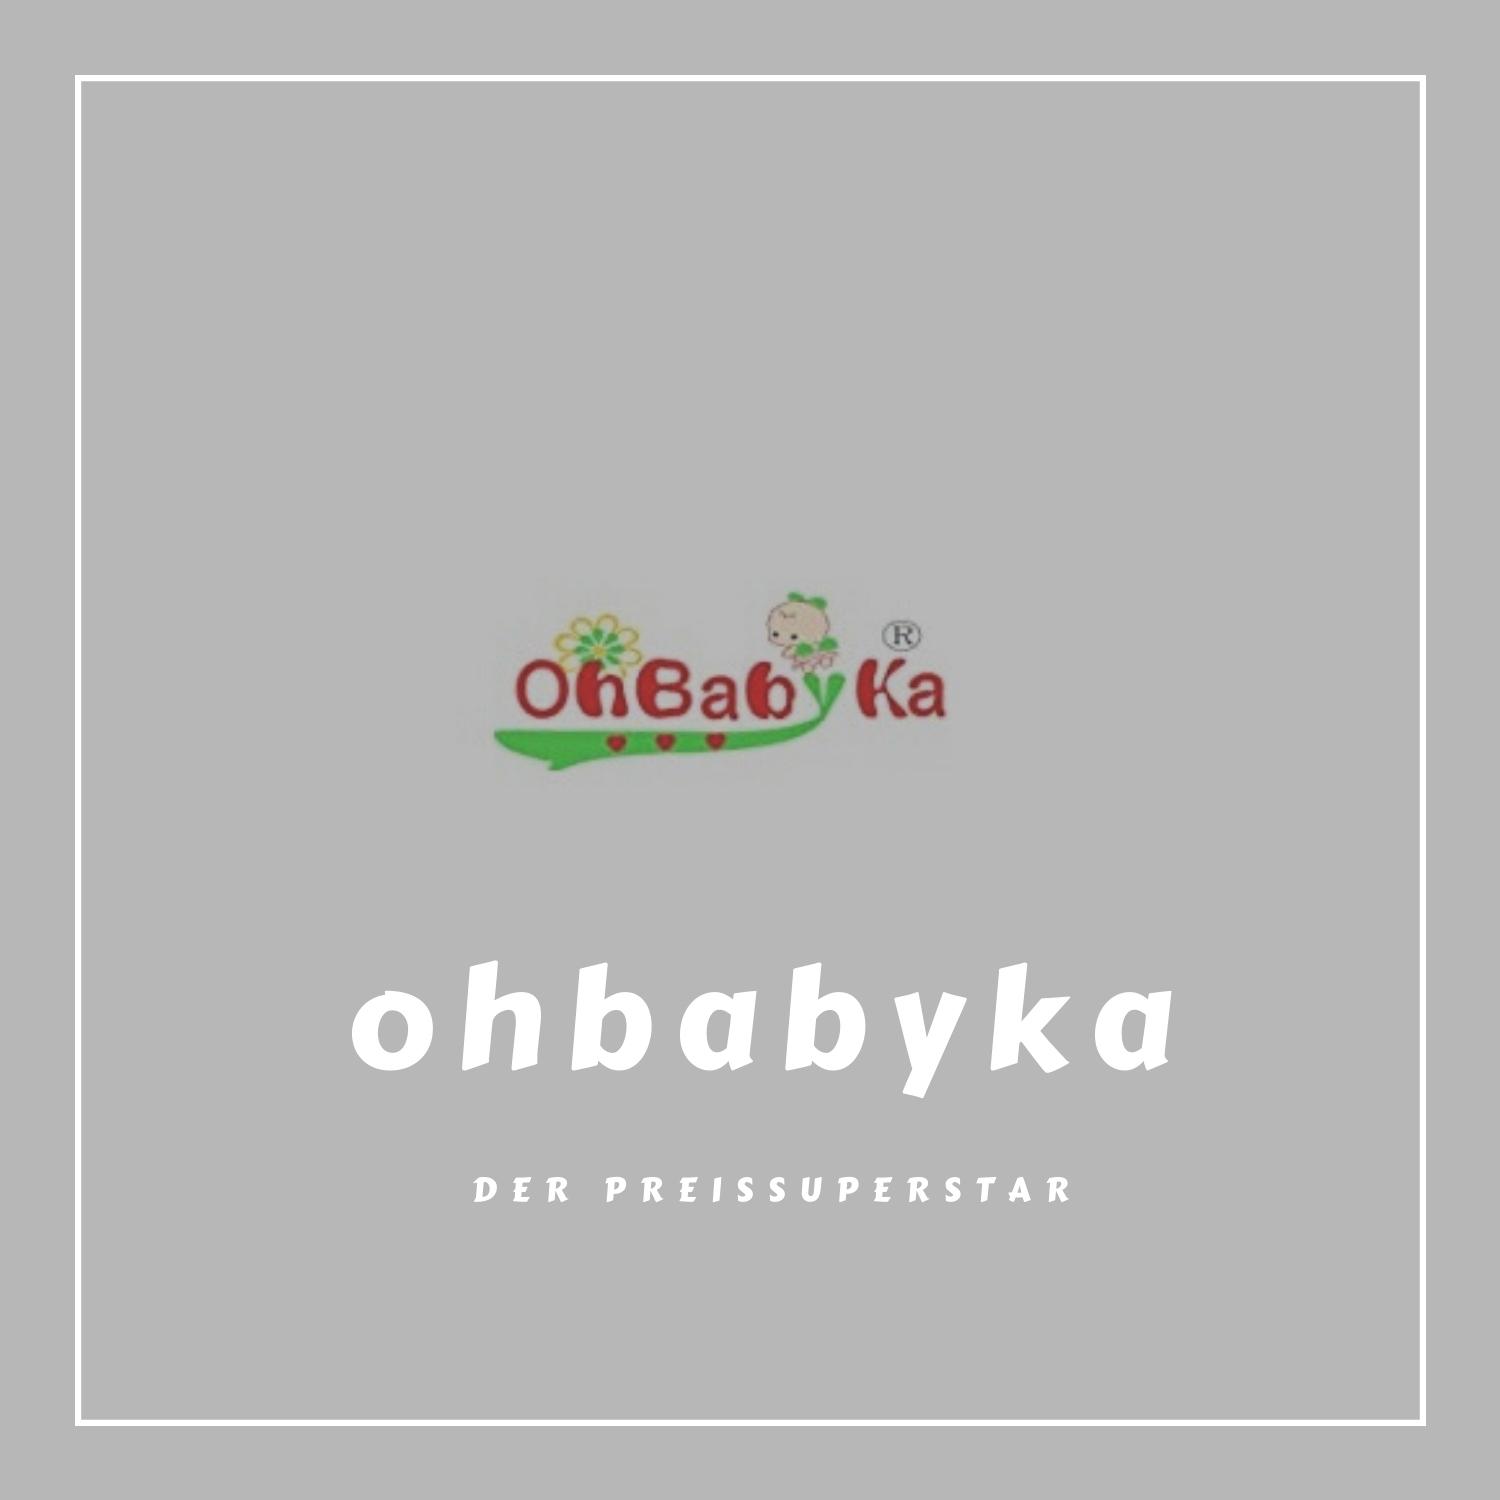 OhBabyKa